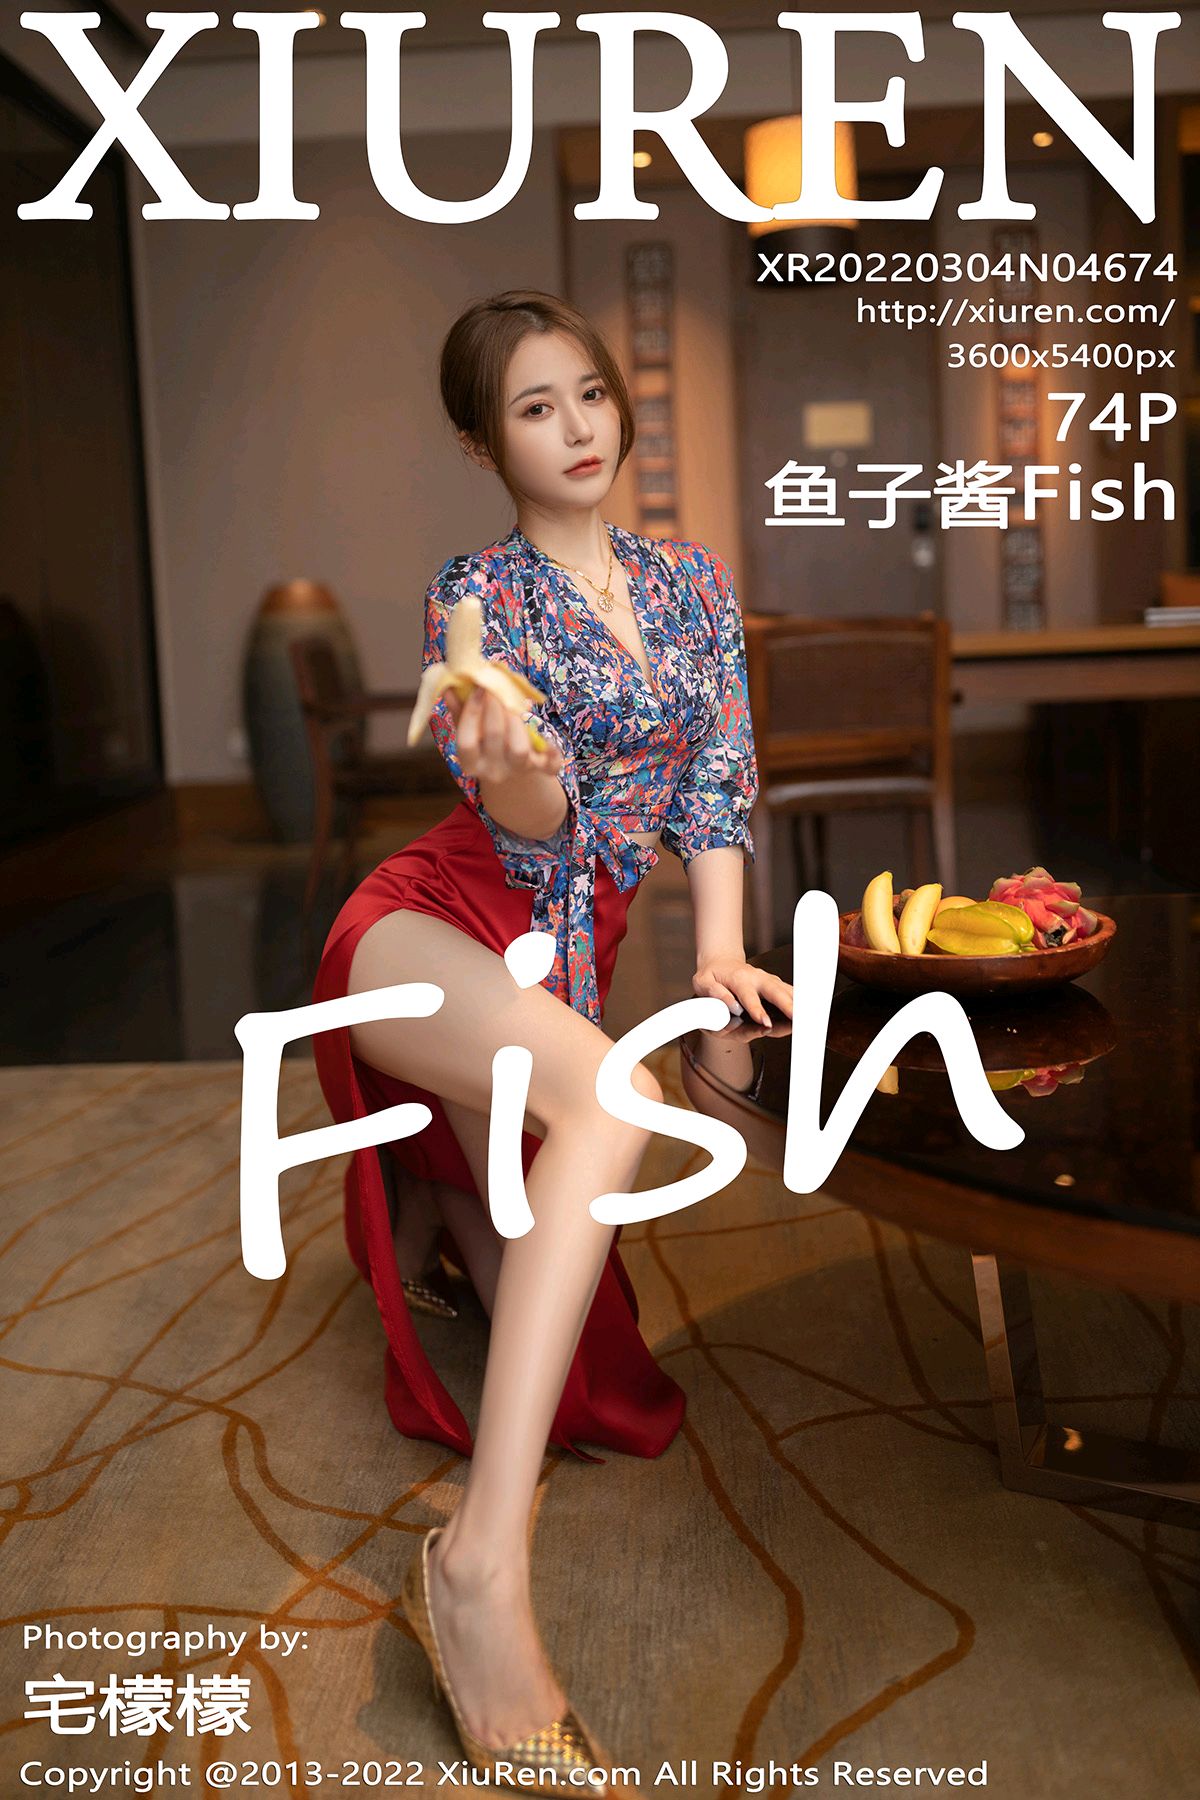 4674 鱼子酱Fish 三亚美女写真80